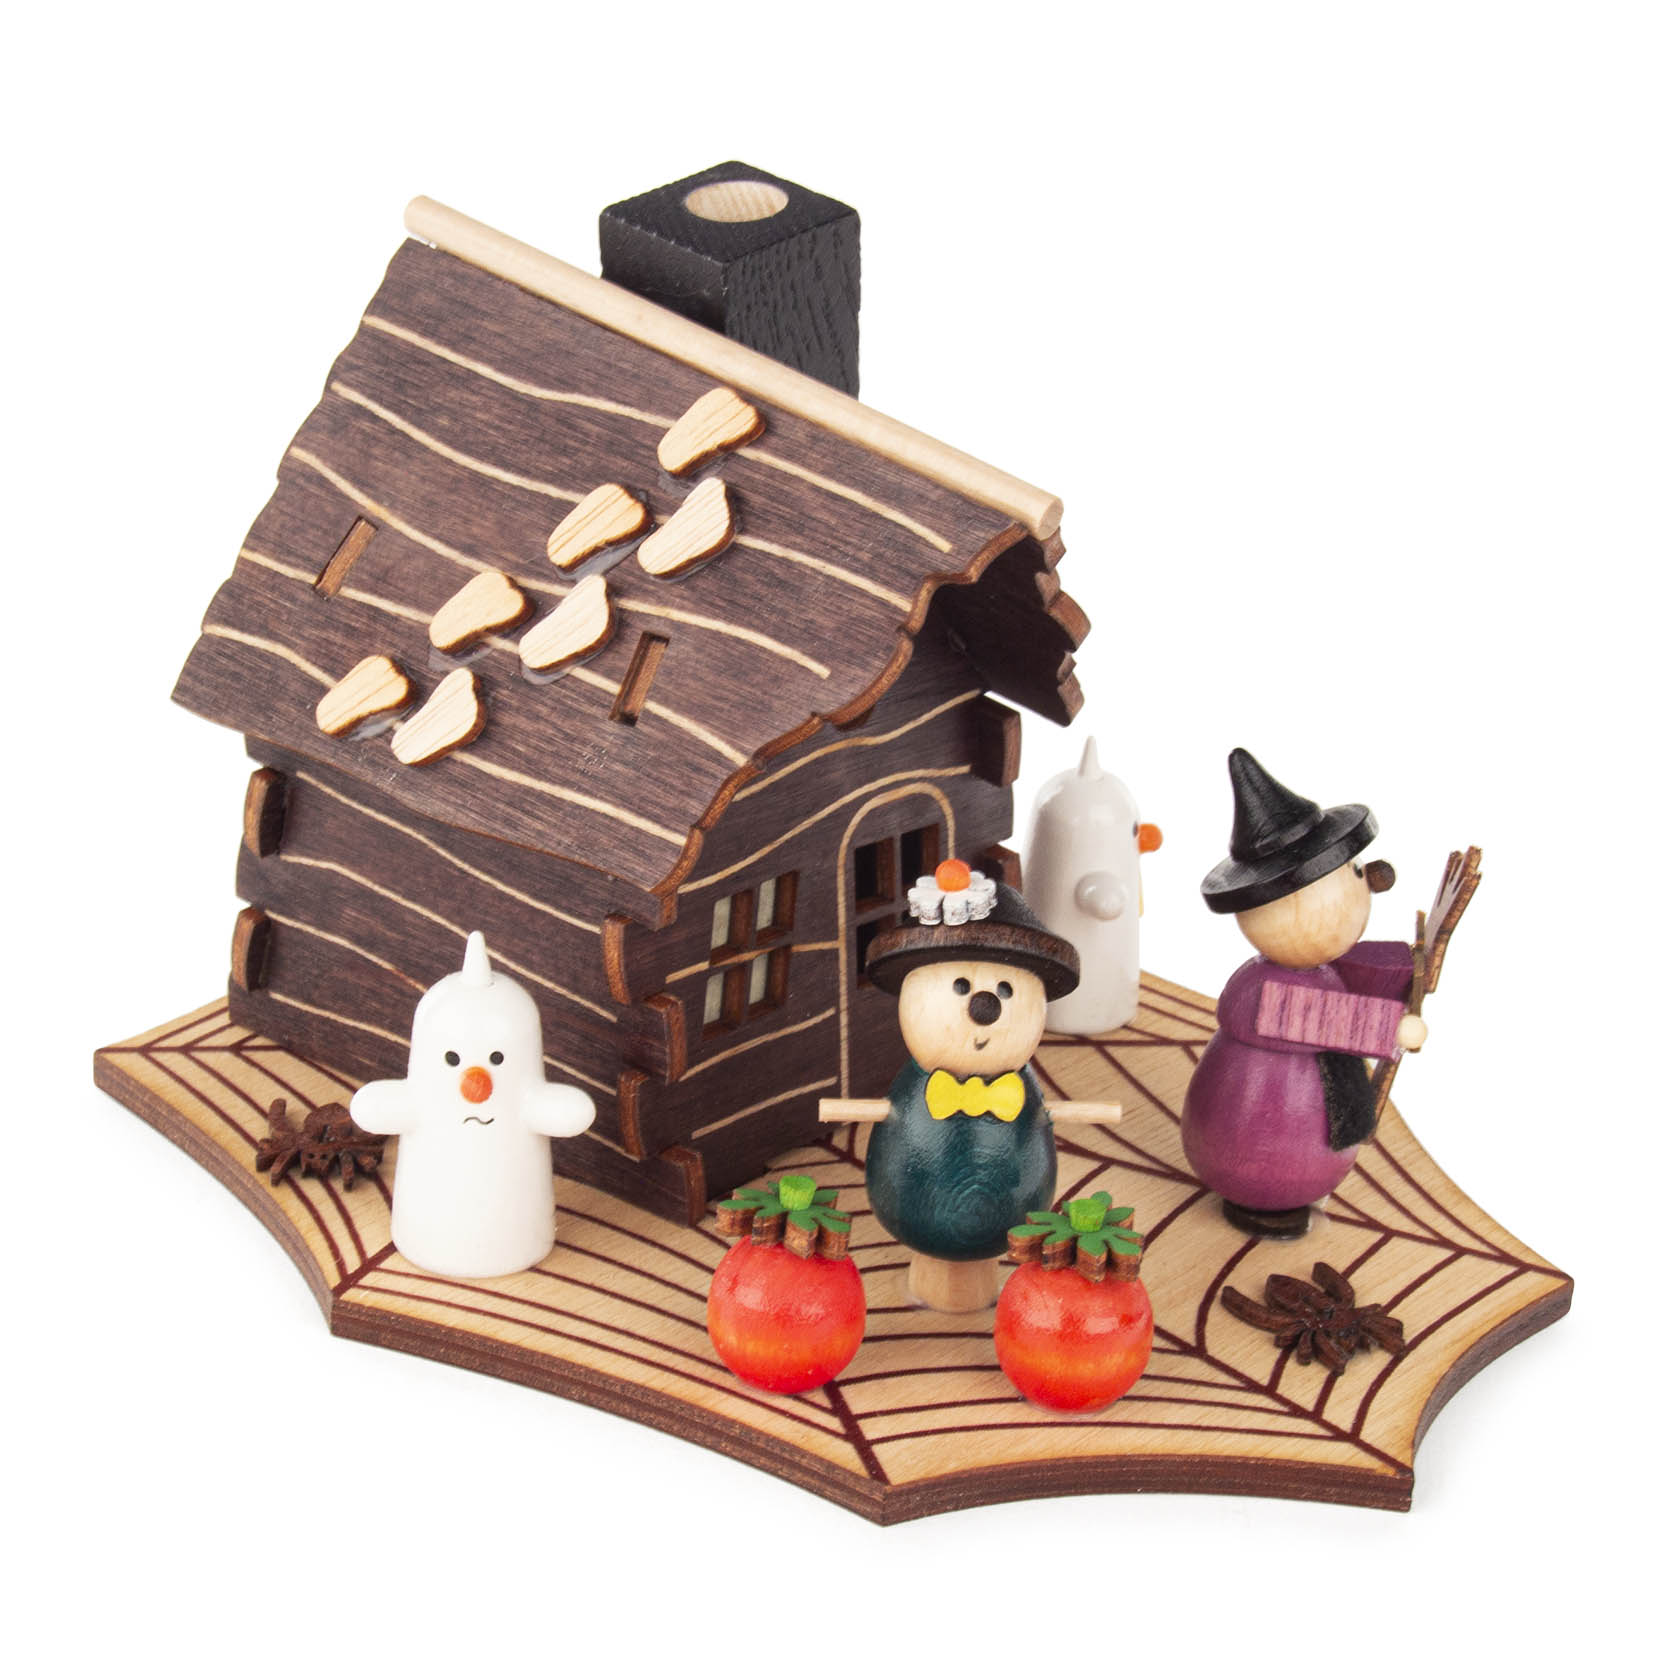 Räucherhaus "Halloween" mit Hexe und Gespenst im Dregeno Online Shop günstig kaufen